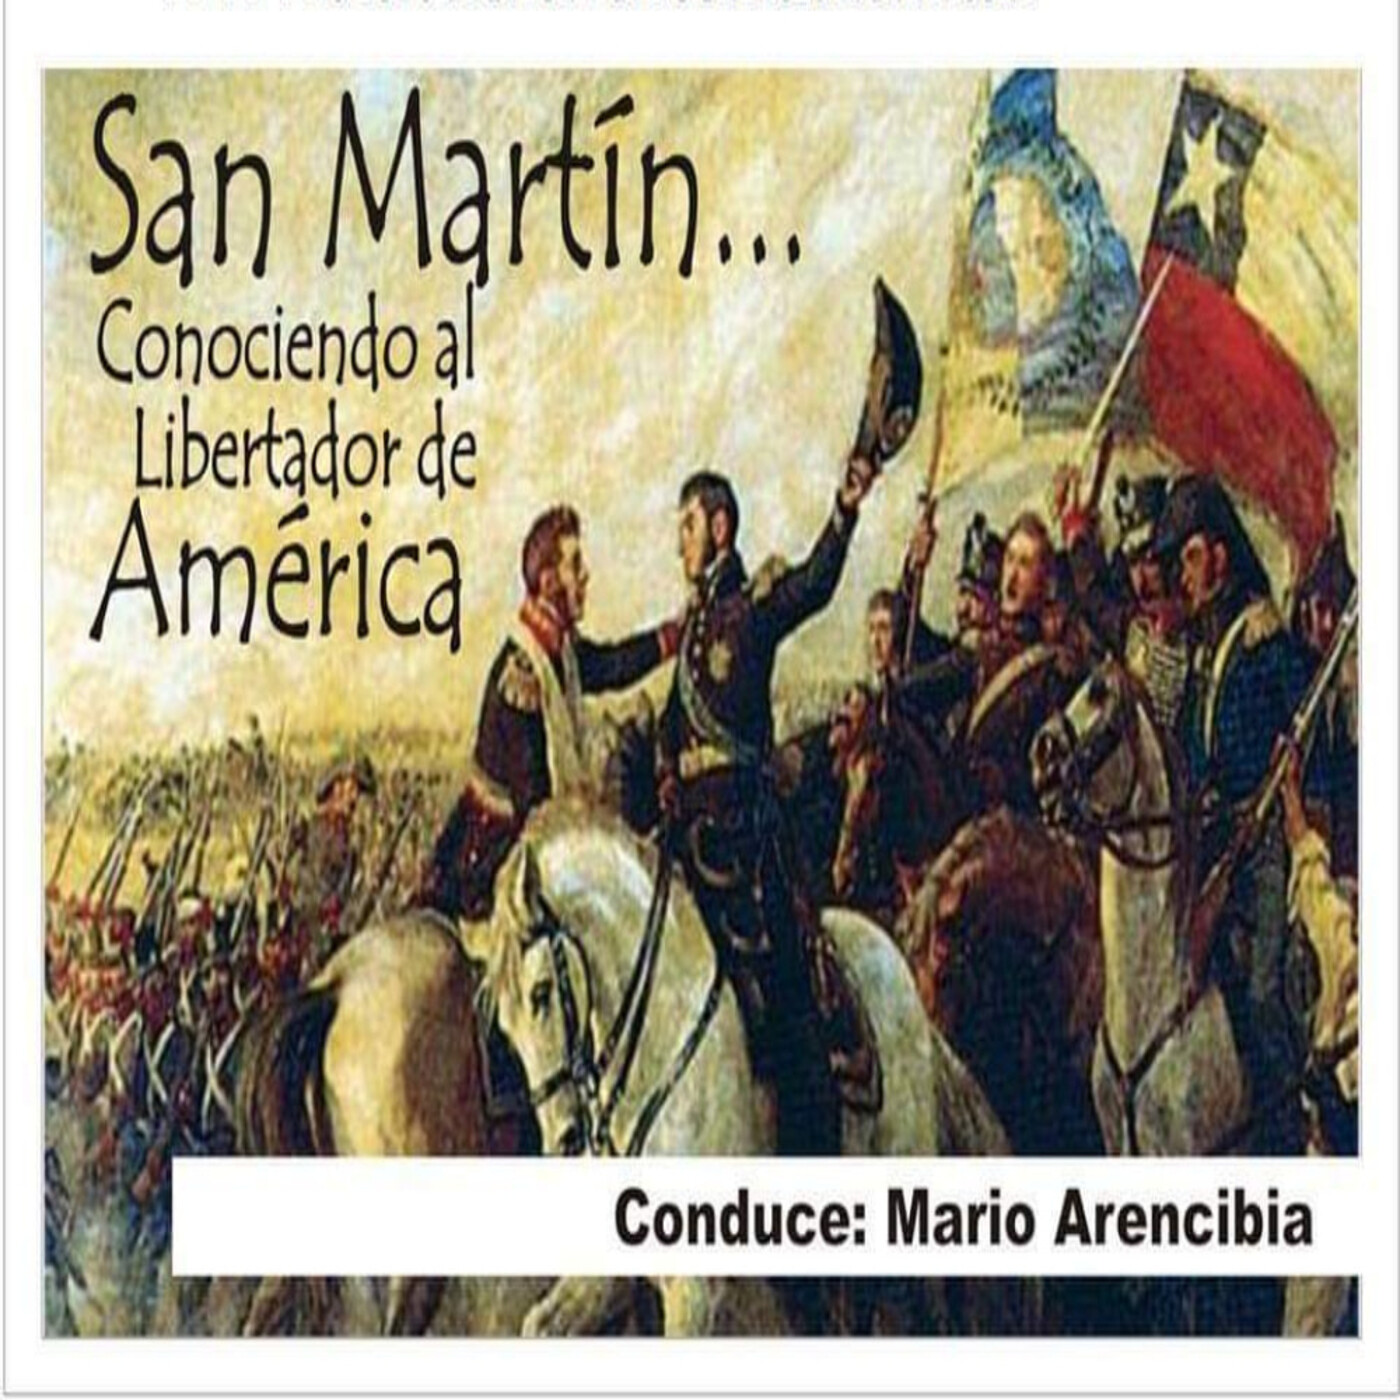 18/11/2023 San Martín (Conociendo al Libertador de America)